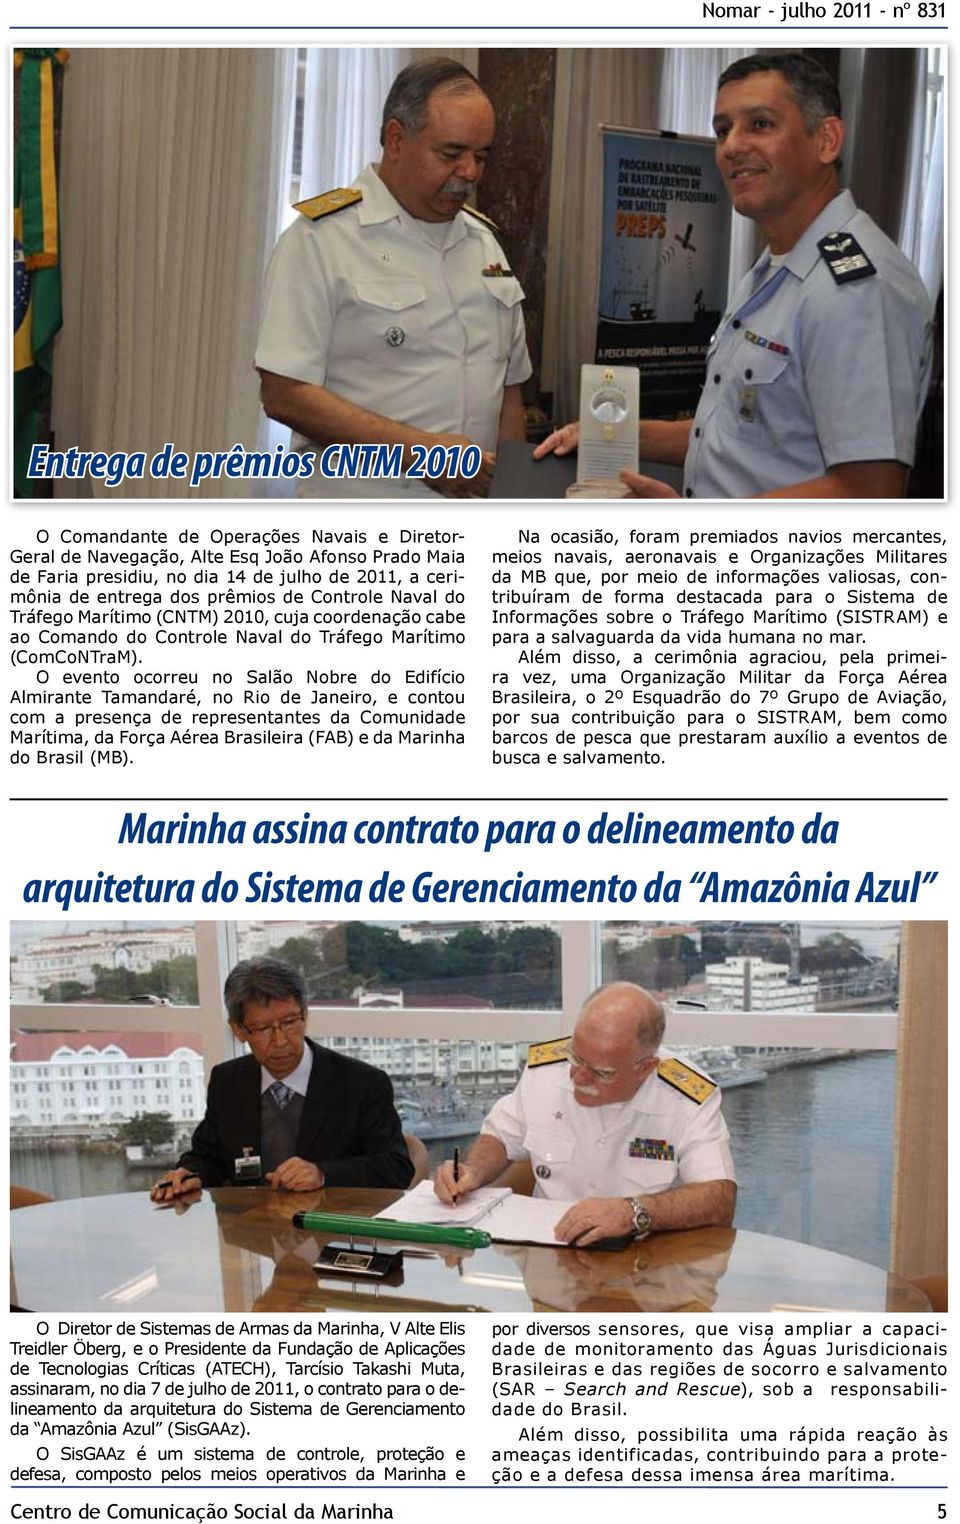 O evento ocorreu no Salão Nobre do Edifício Almirante Tamandaré, no Rio de Janeiro, e contou com a presença de representantes da Comunidade Marítima, da Força Aérea Brasileira (FAB) e da Marinha do